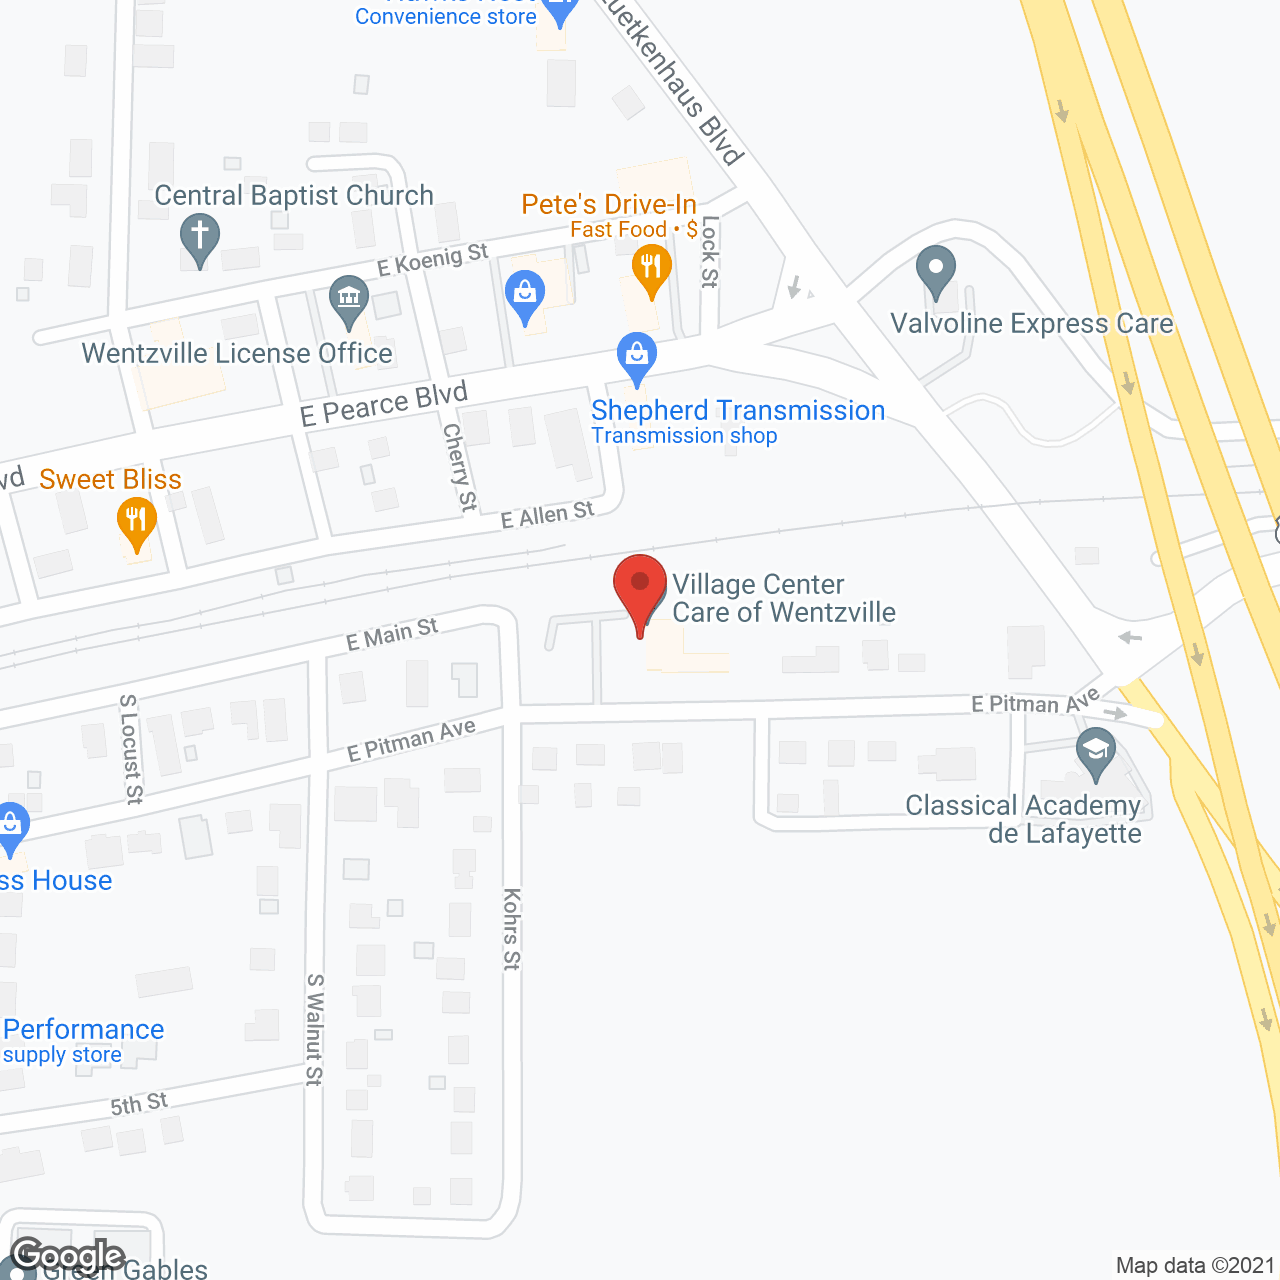 Village Center Care of Wentzville in google map